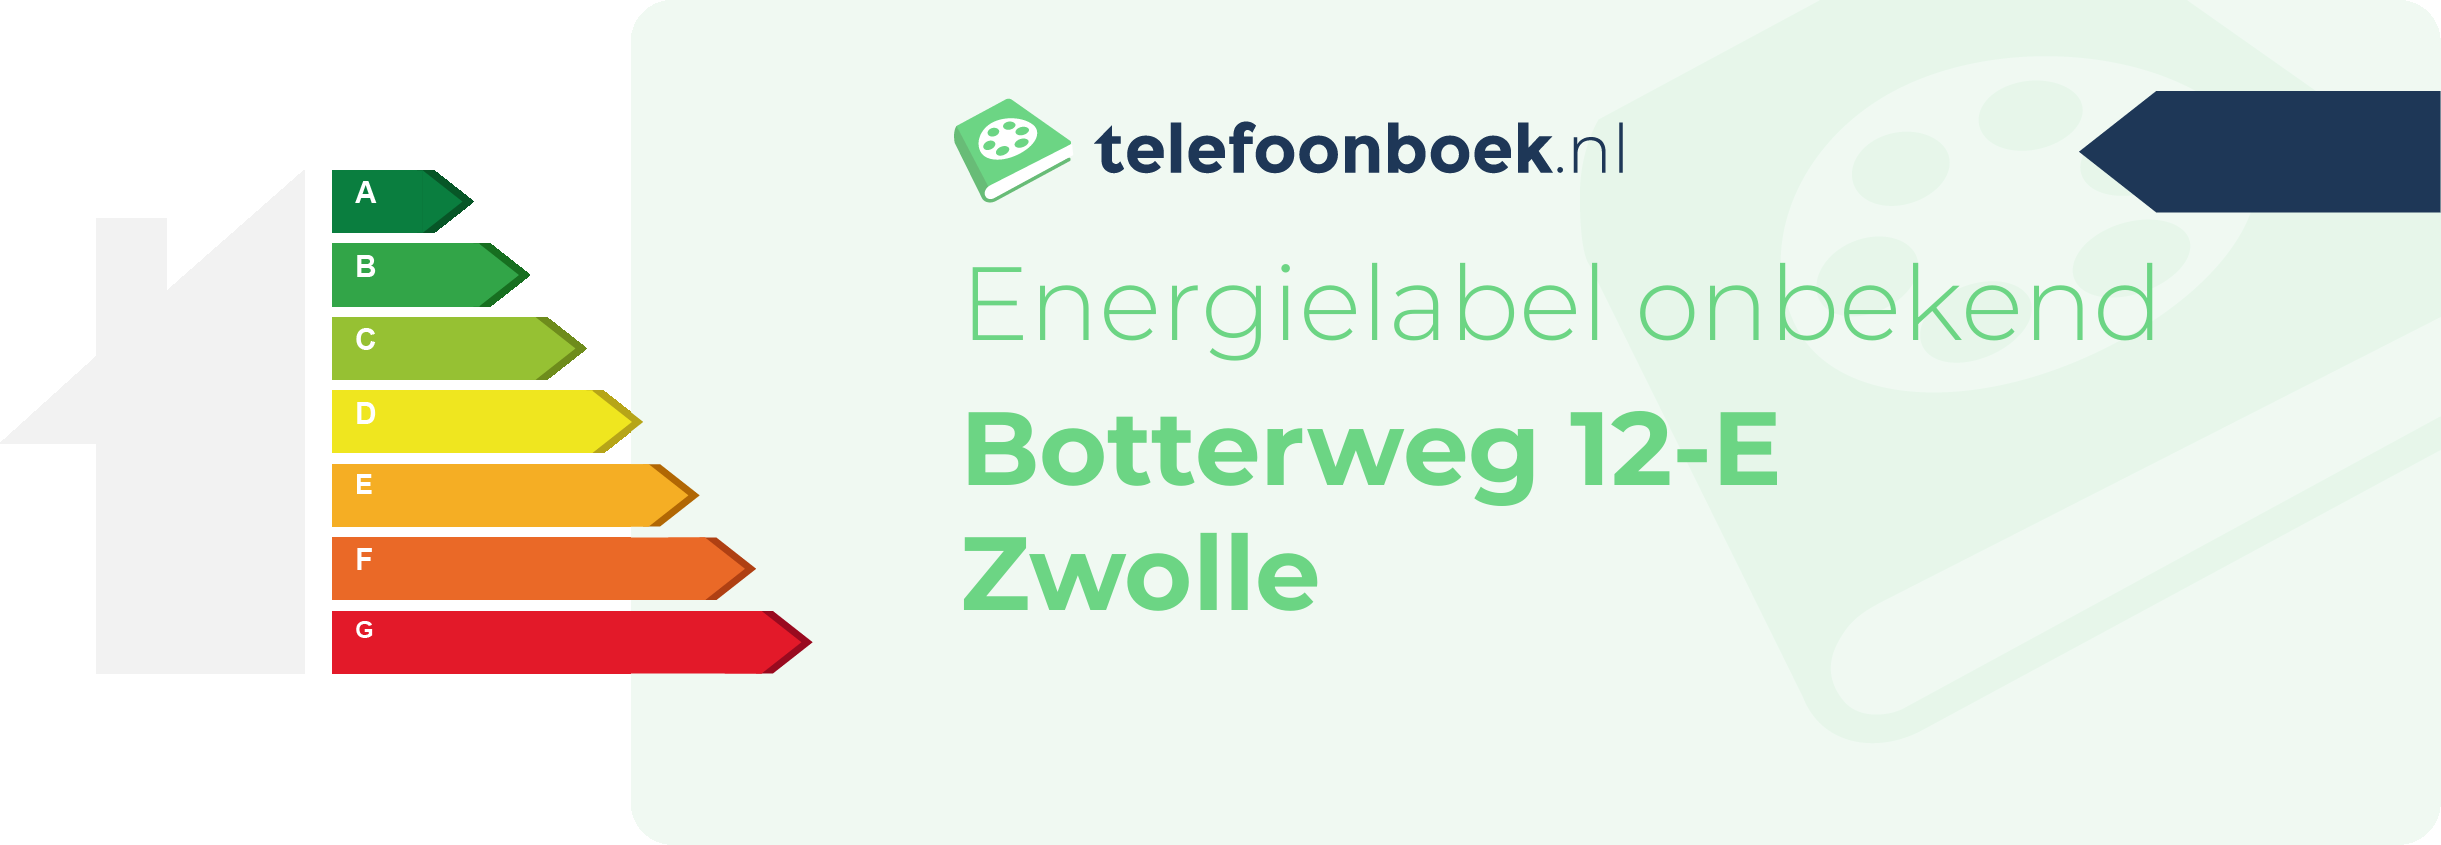 Energielabel Botterweg 12-E Zwolle